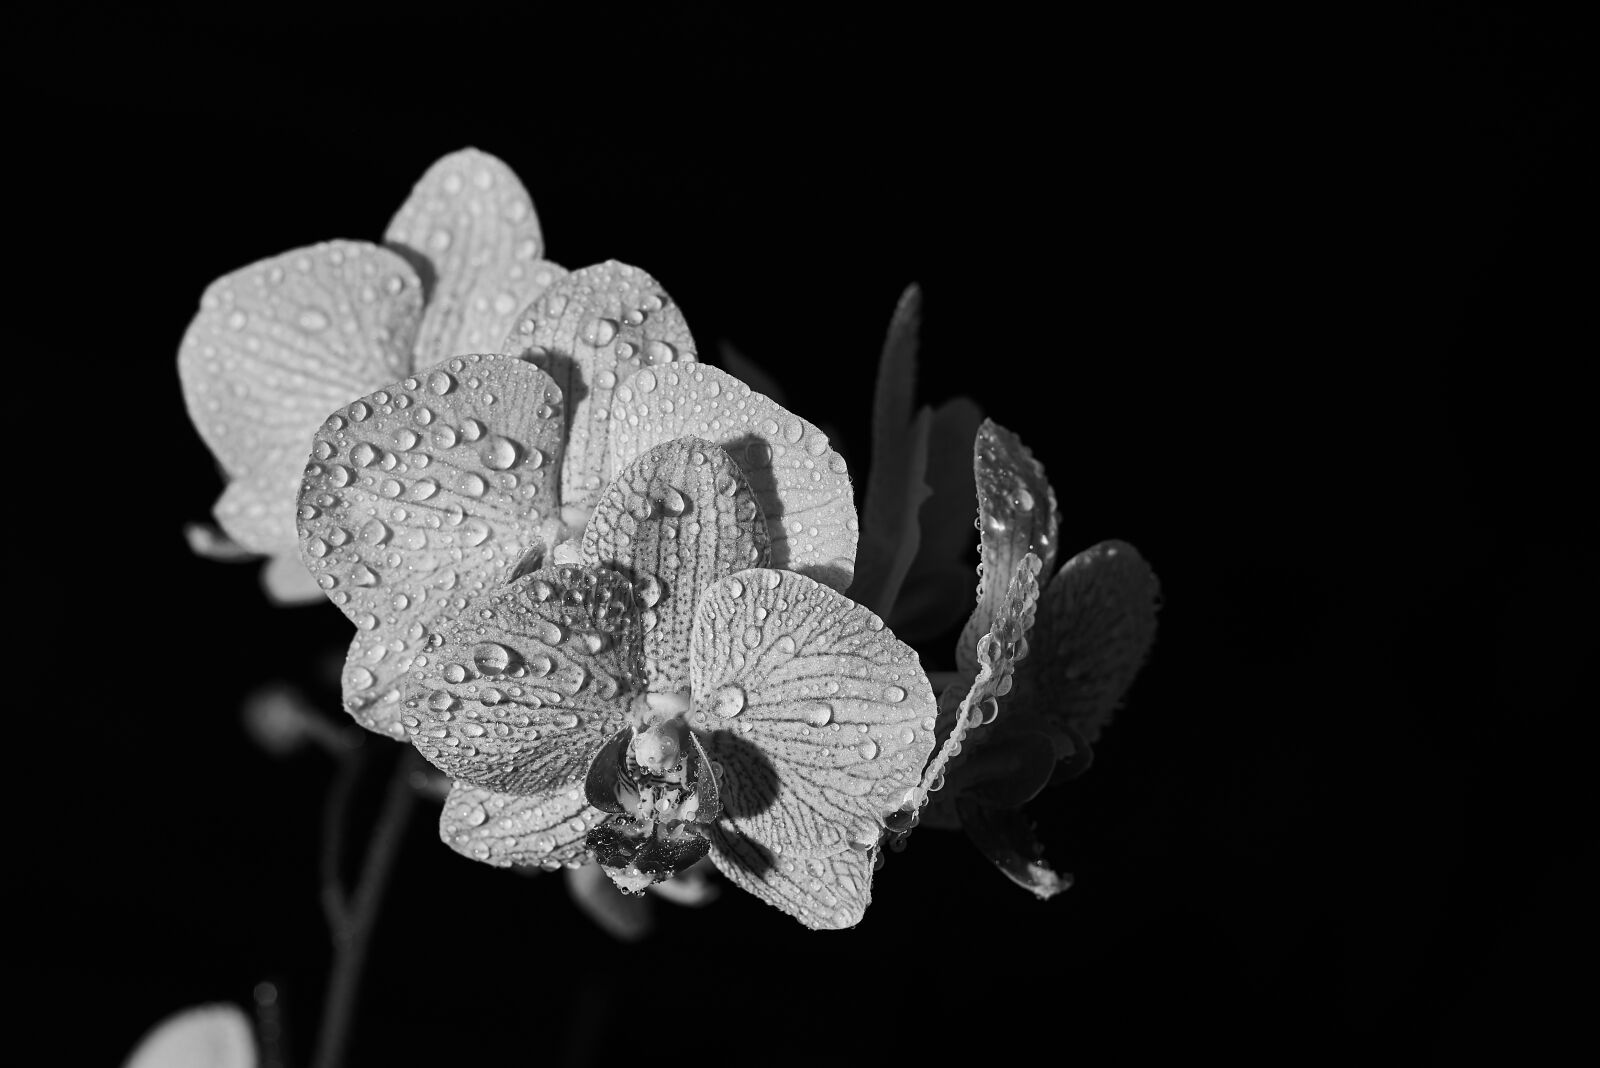 Nikon AF-S Nikkor 50mm F1.8G sample photo. Flower, orchid, blossom photography